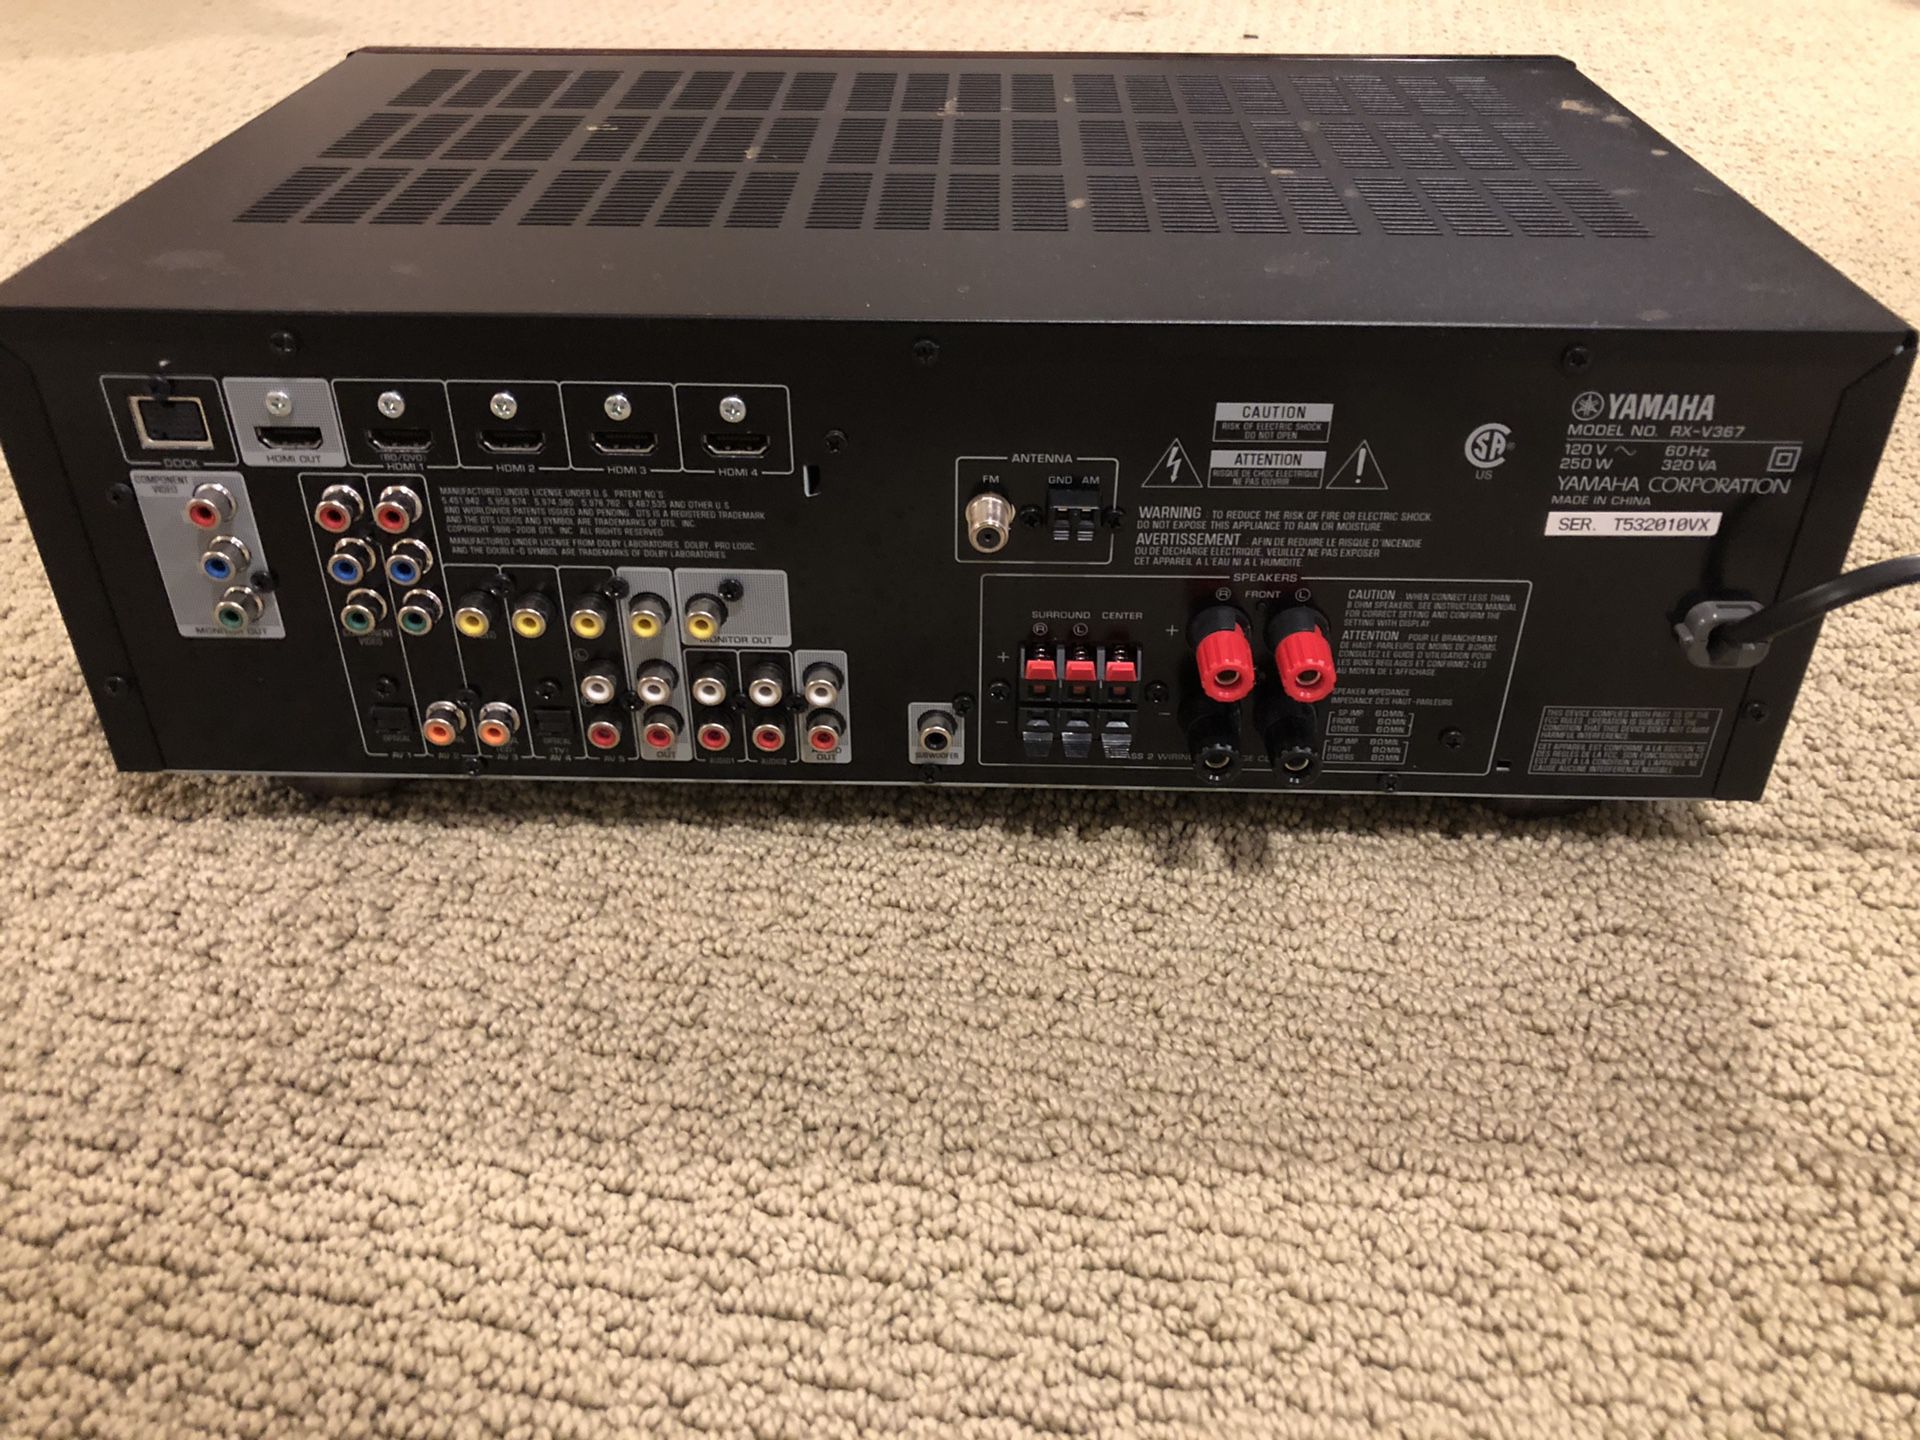 RX-V367 Yamaha audio receiver